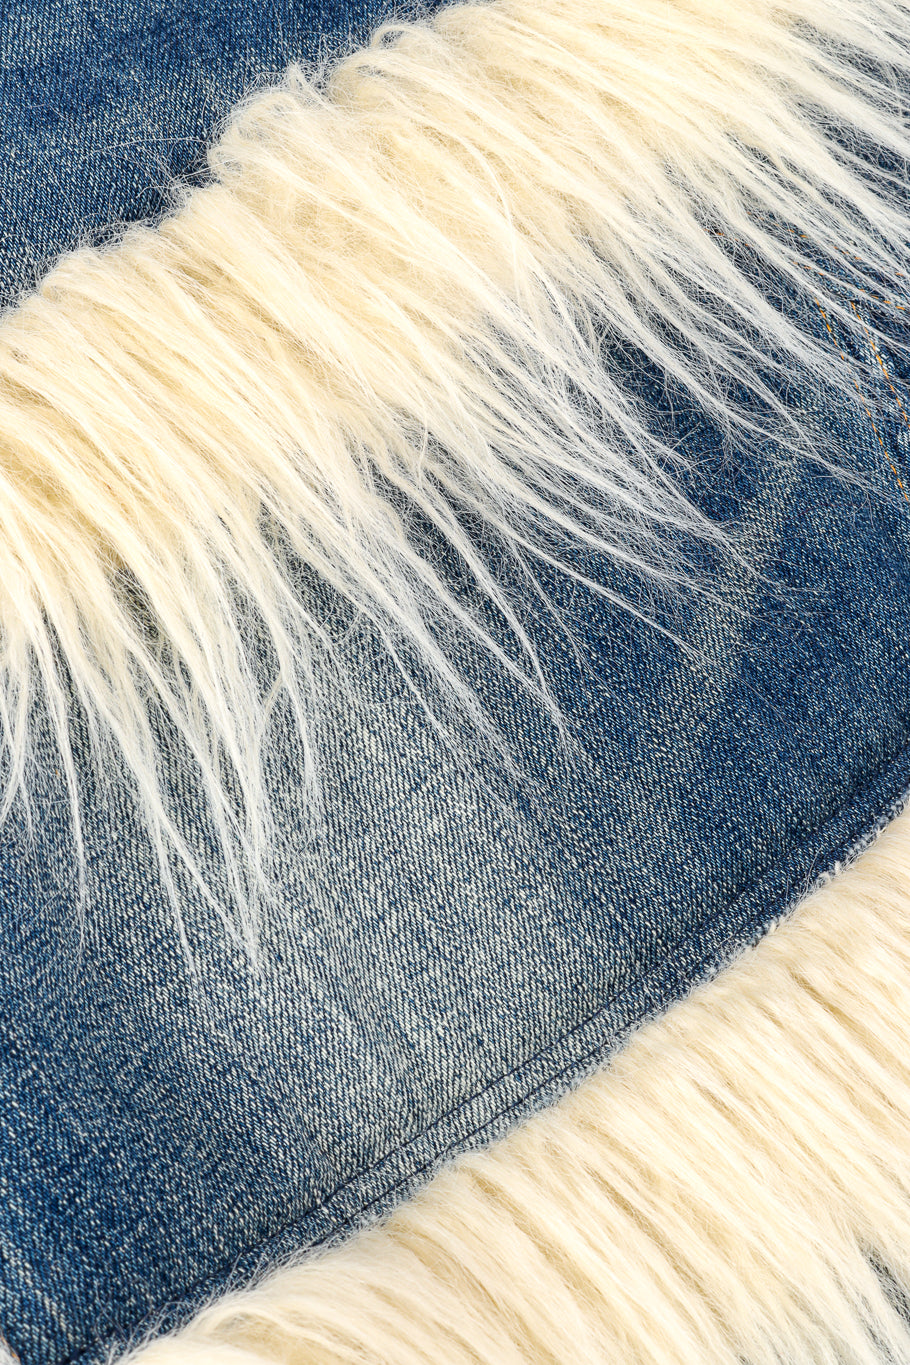 Junya Watanabe Denim Faux Fur Skirt fabric closeup @recessla